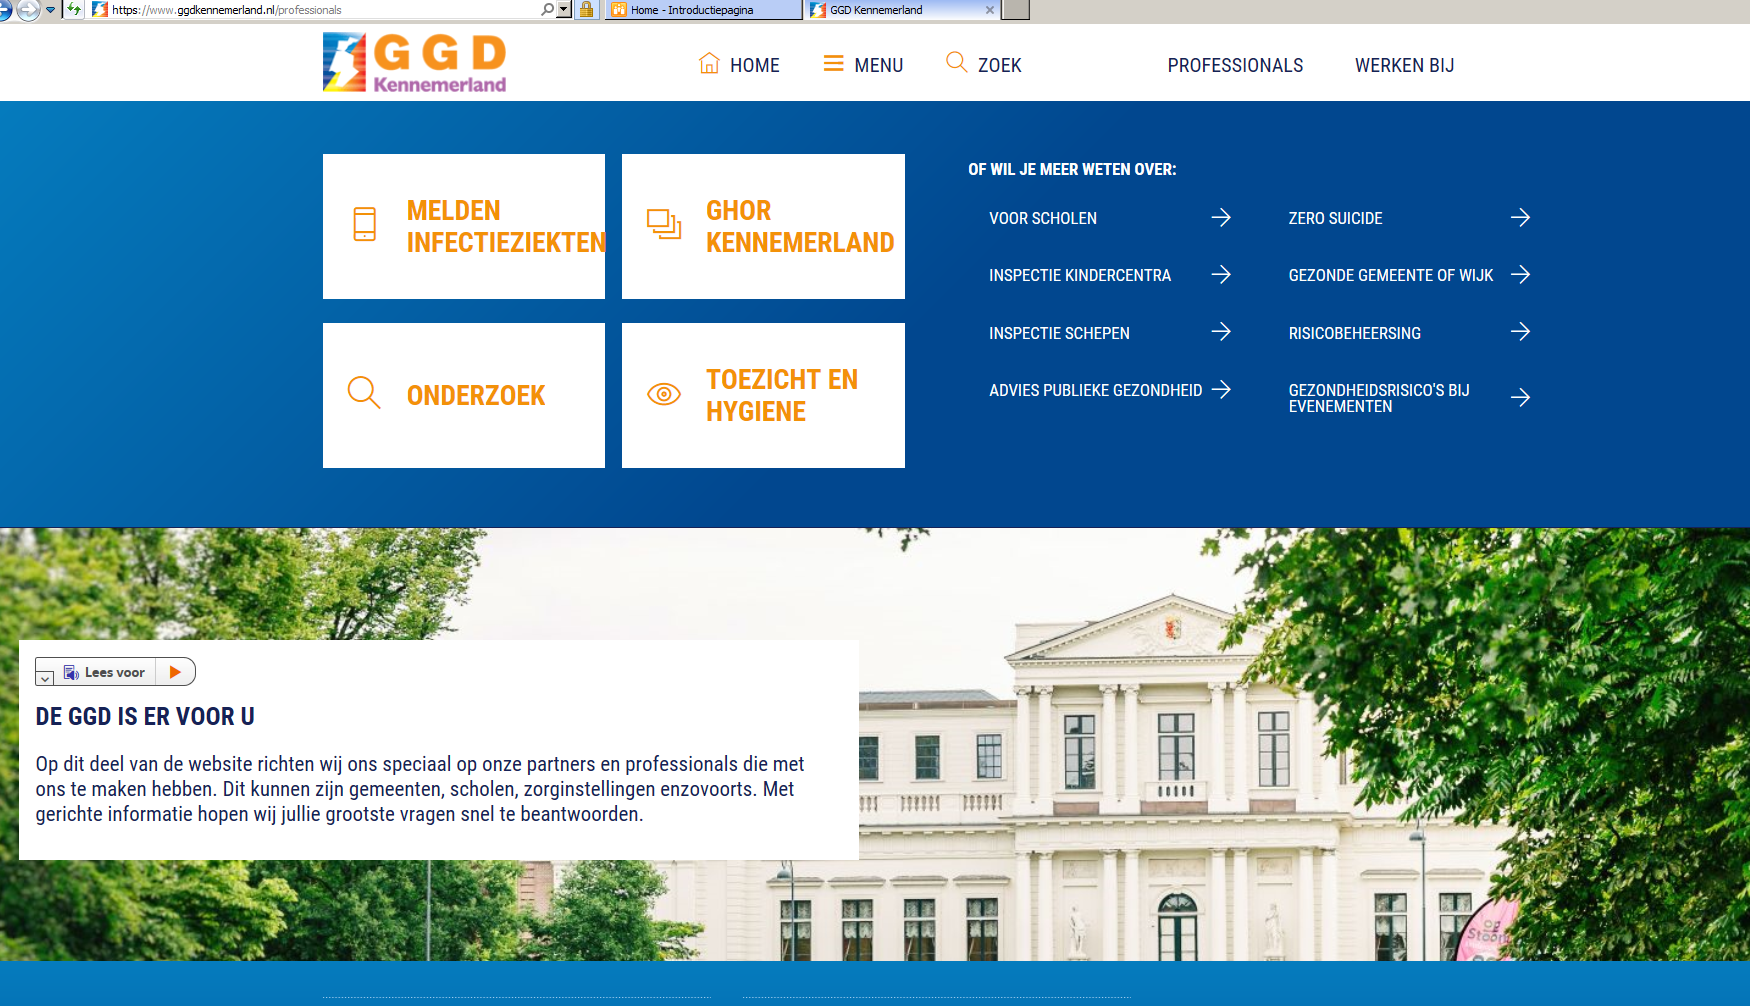 Beeld startpagina professionals website GGD Kennemerland